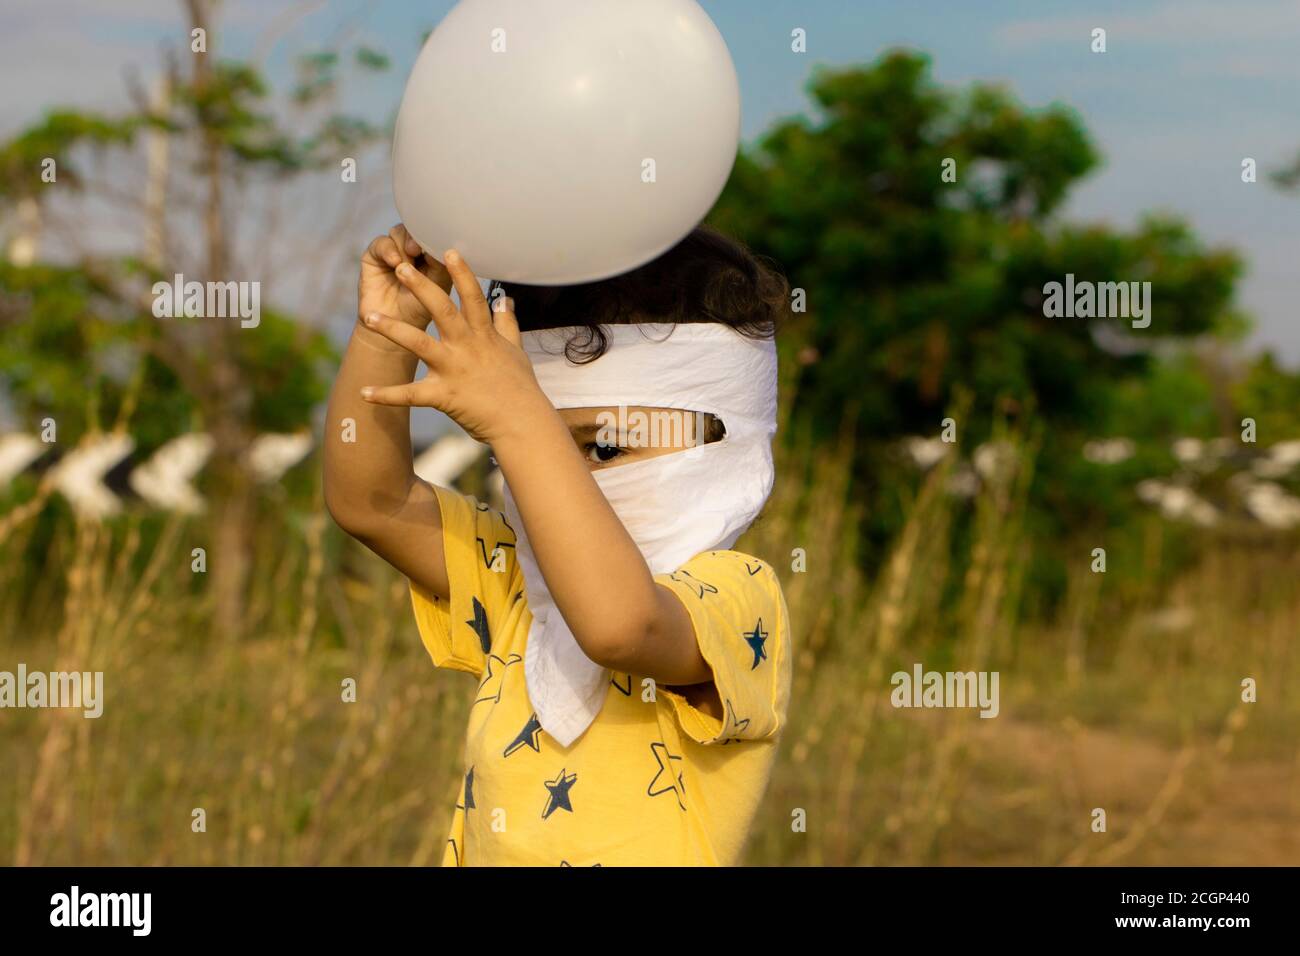 Ein asiatischer Junge genießt das Entriegeln covid-19 und hält weißen Ballon in zwei Händen auf dem Parkplatz in der Nähe ecr Straße von chennai, Kind volles Gesicht mit Maske bedeckt Stockfoto